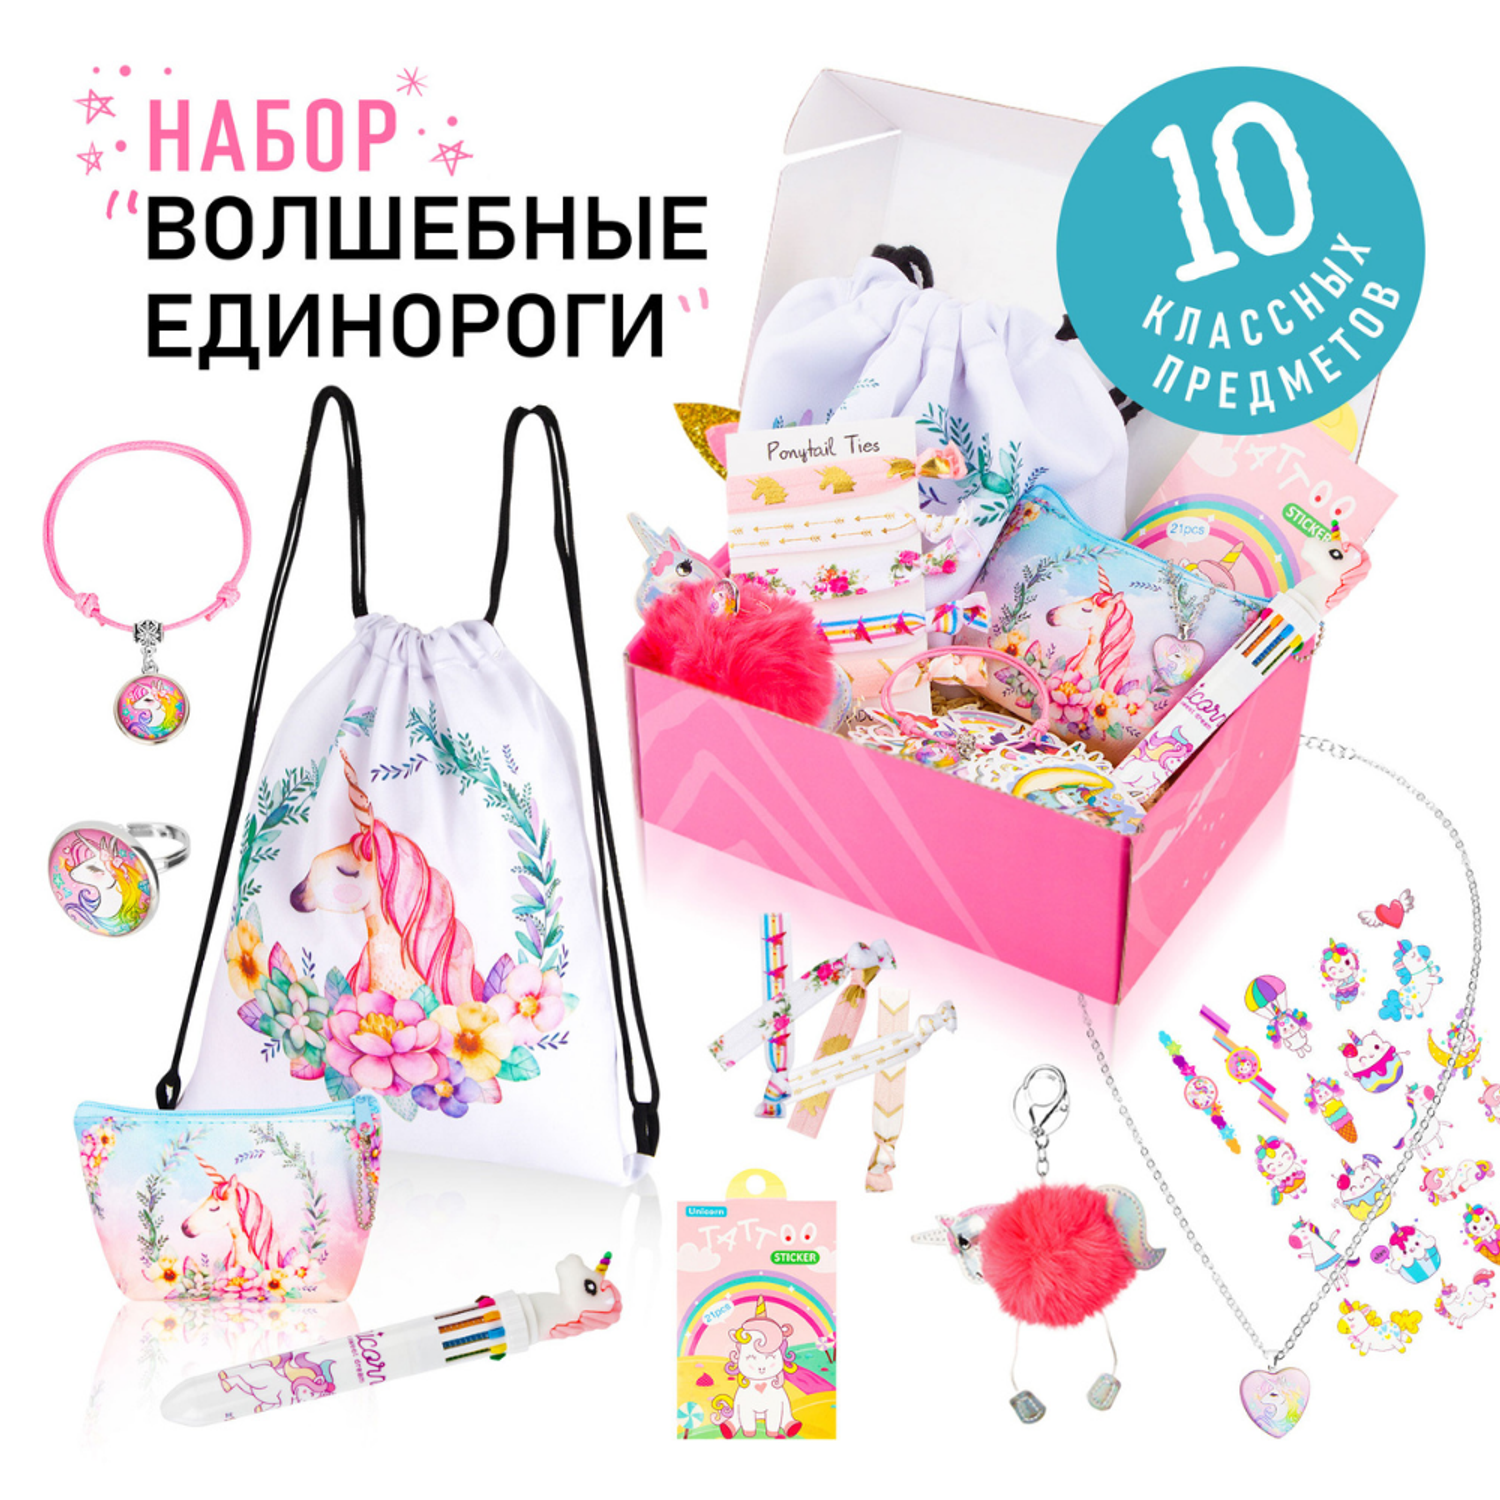 Подарочный набор аксессуаров NRAVIZA Детям Единорог для девочек 10 предметов - фото 29